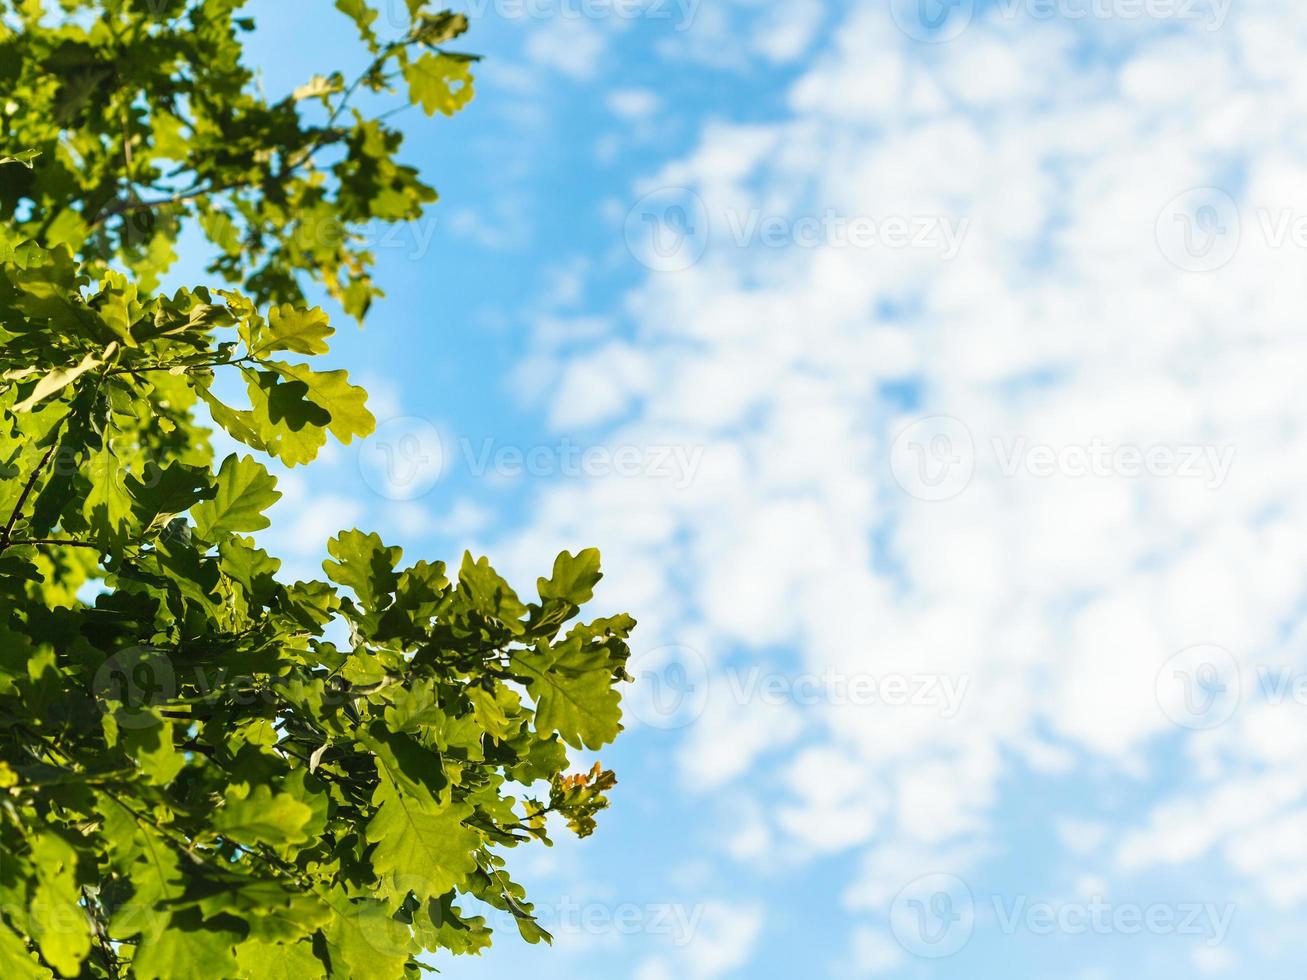 sonnendurchflutete grüne Eichenblätter und blauer Himmel foto